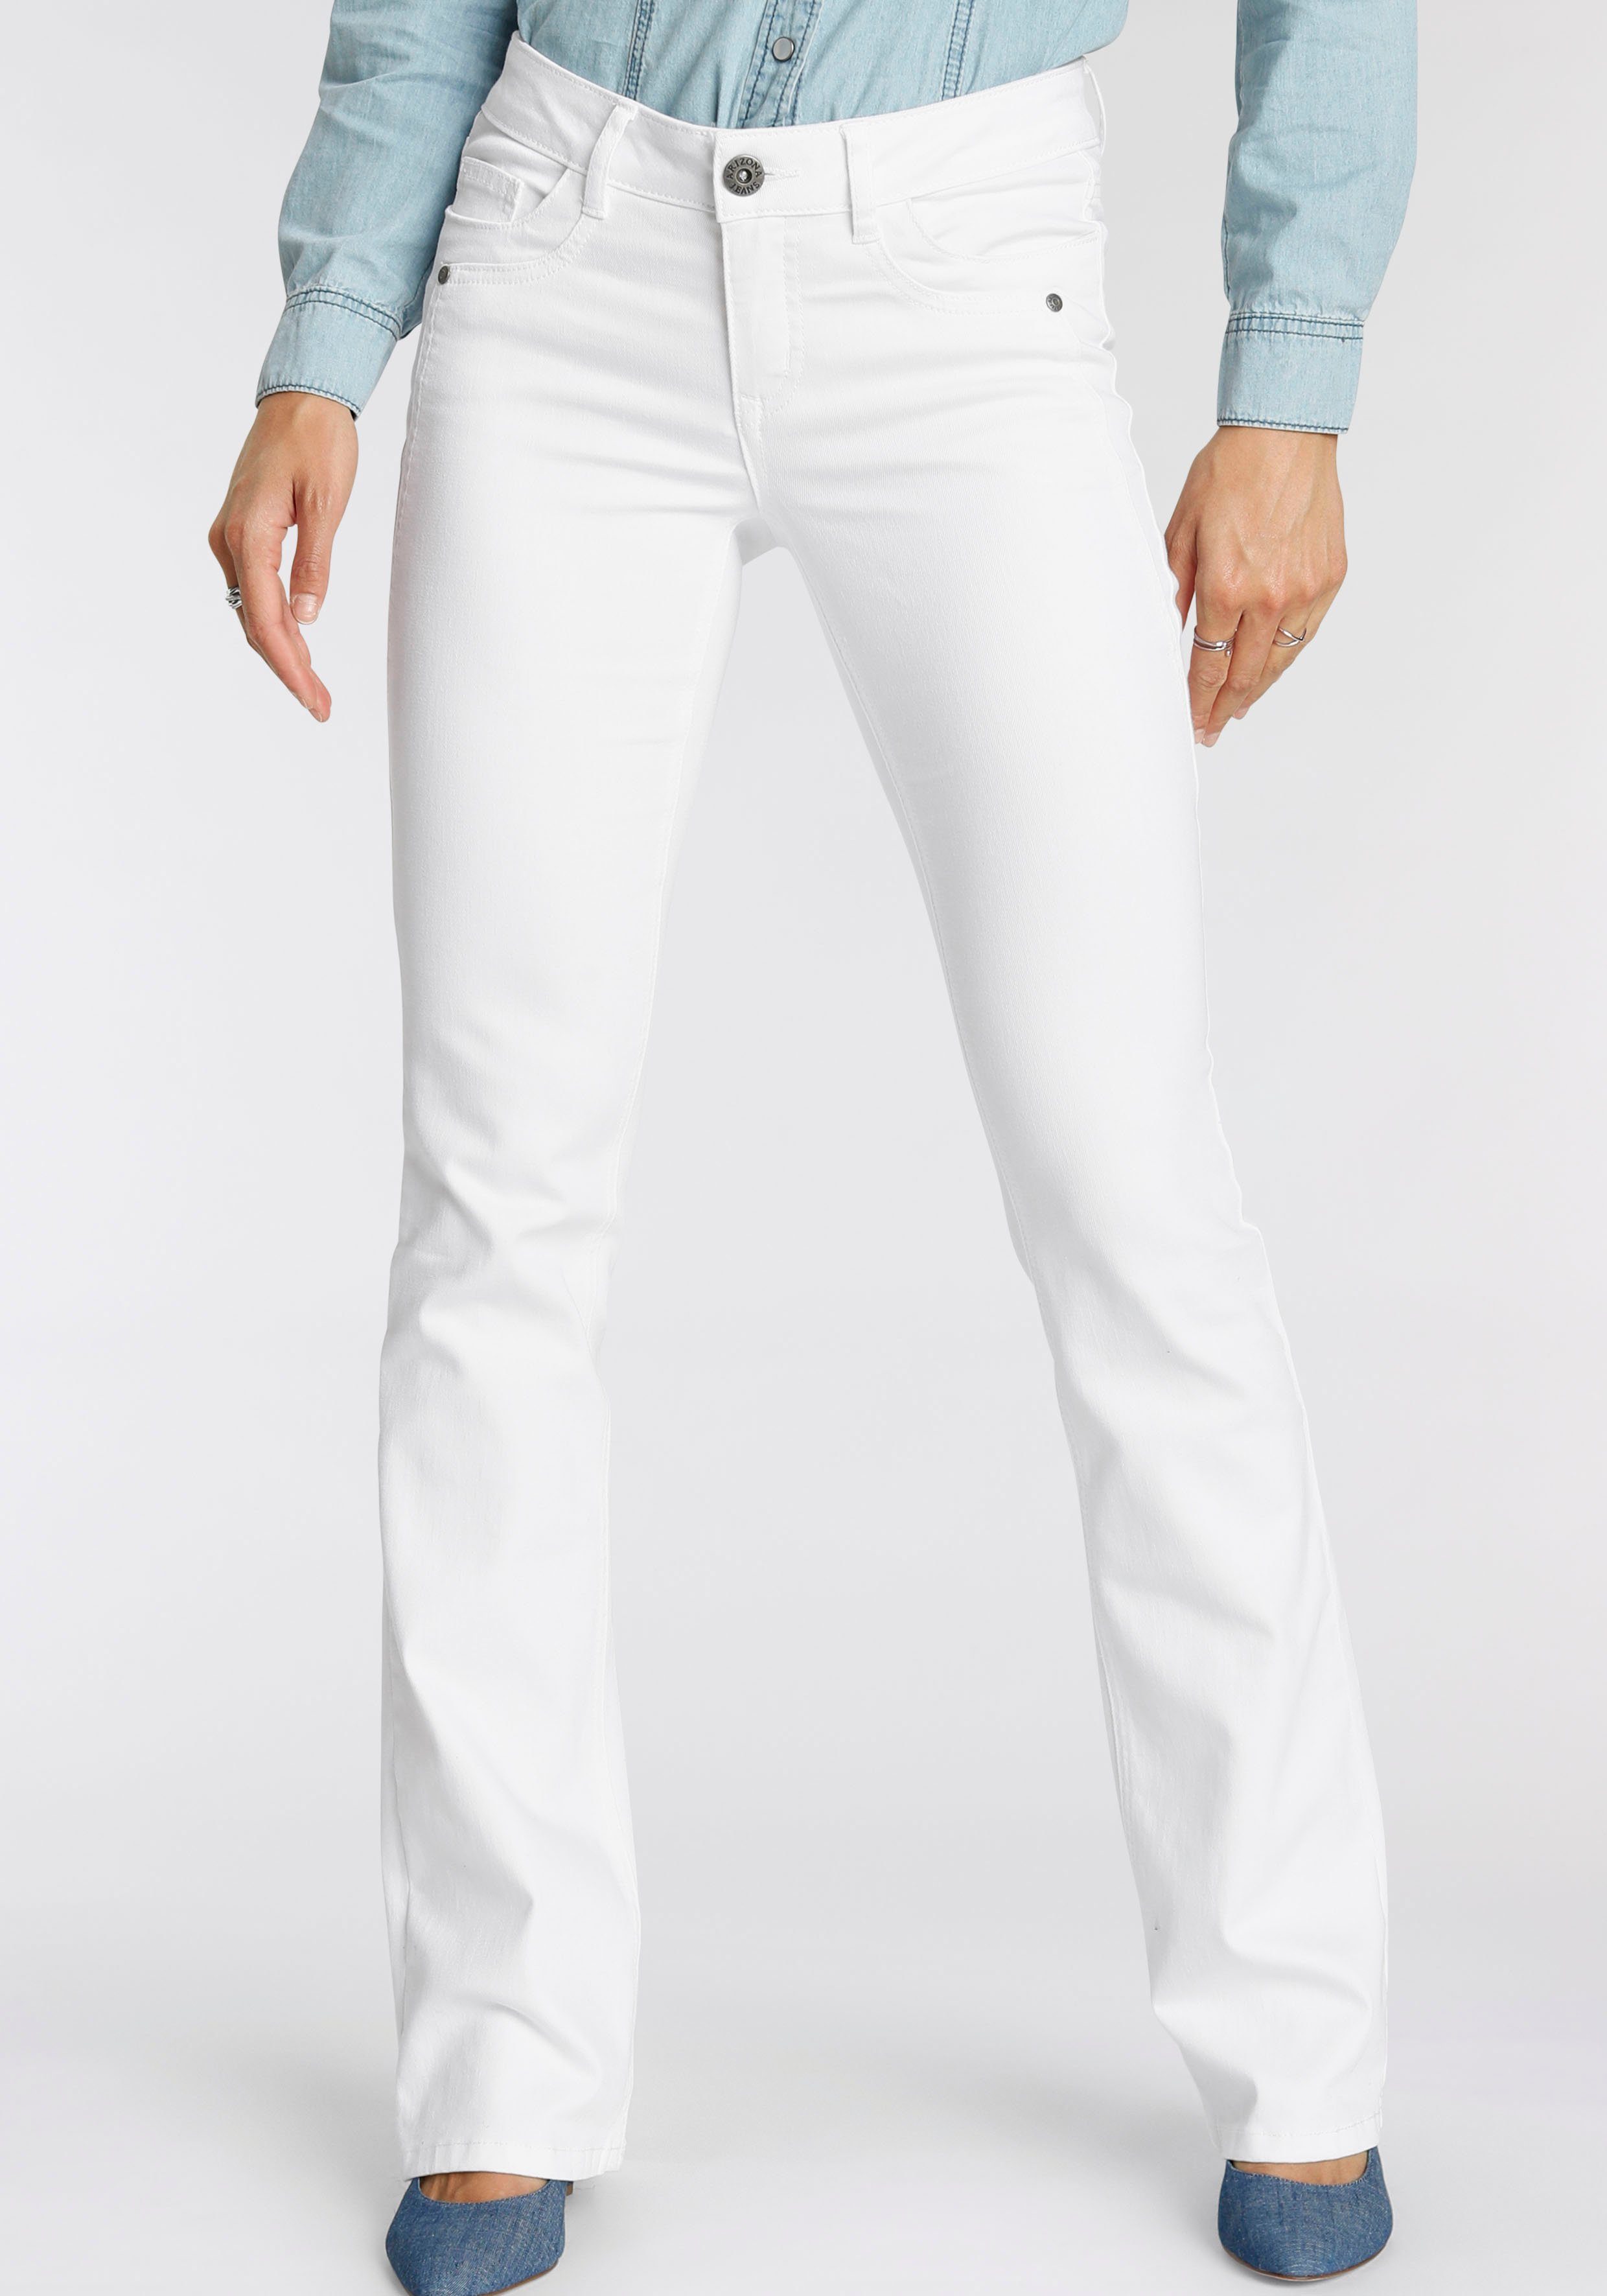 Weiße Jeans für Damen online kaufen » Weiße Jeanshosen | OTTO